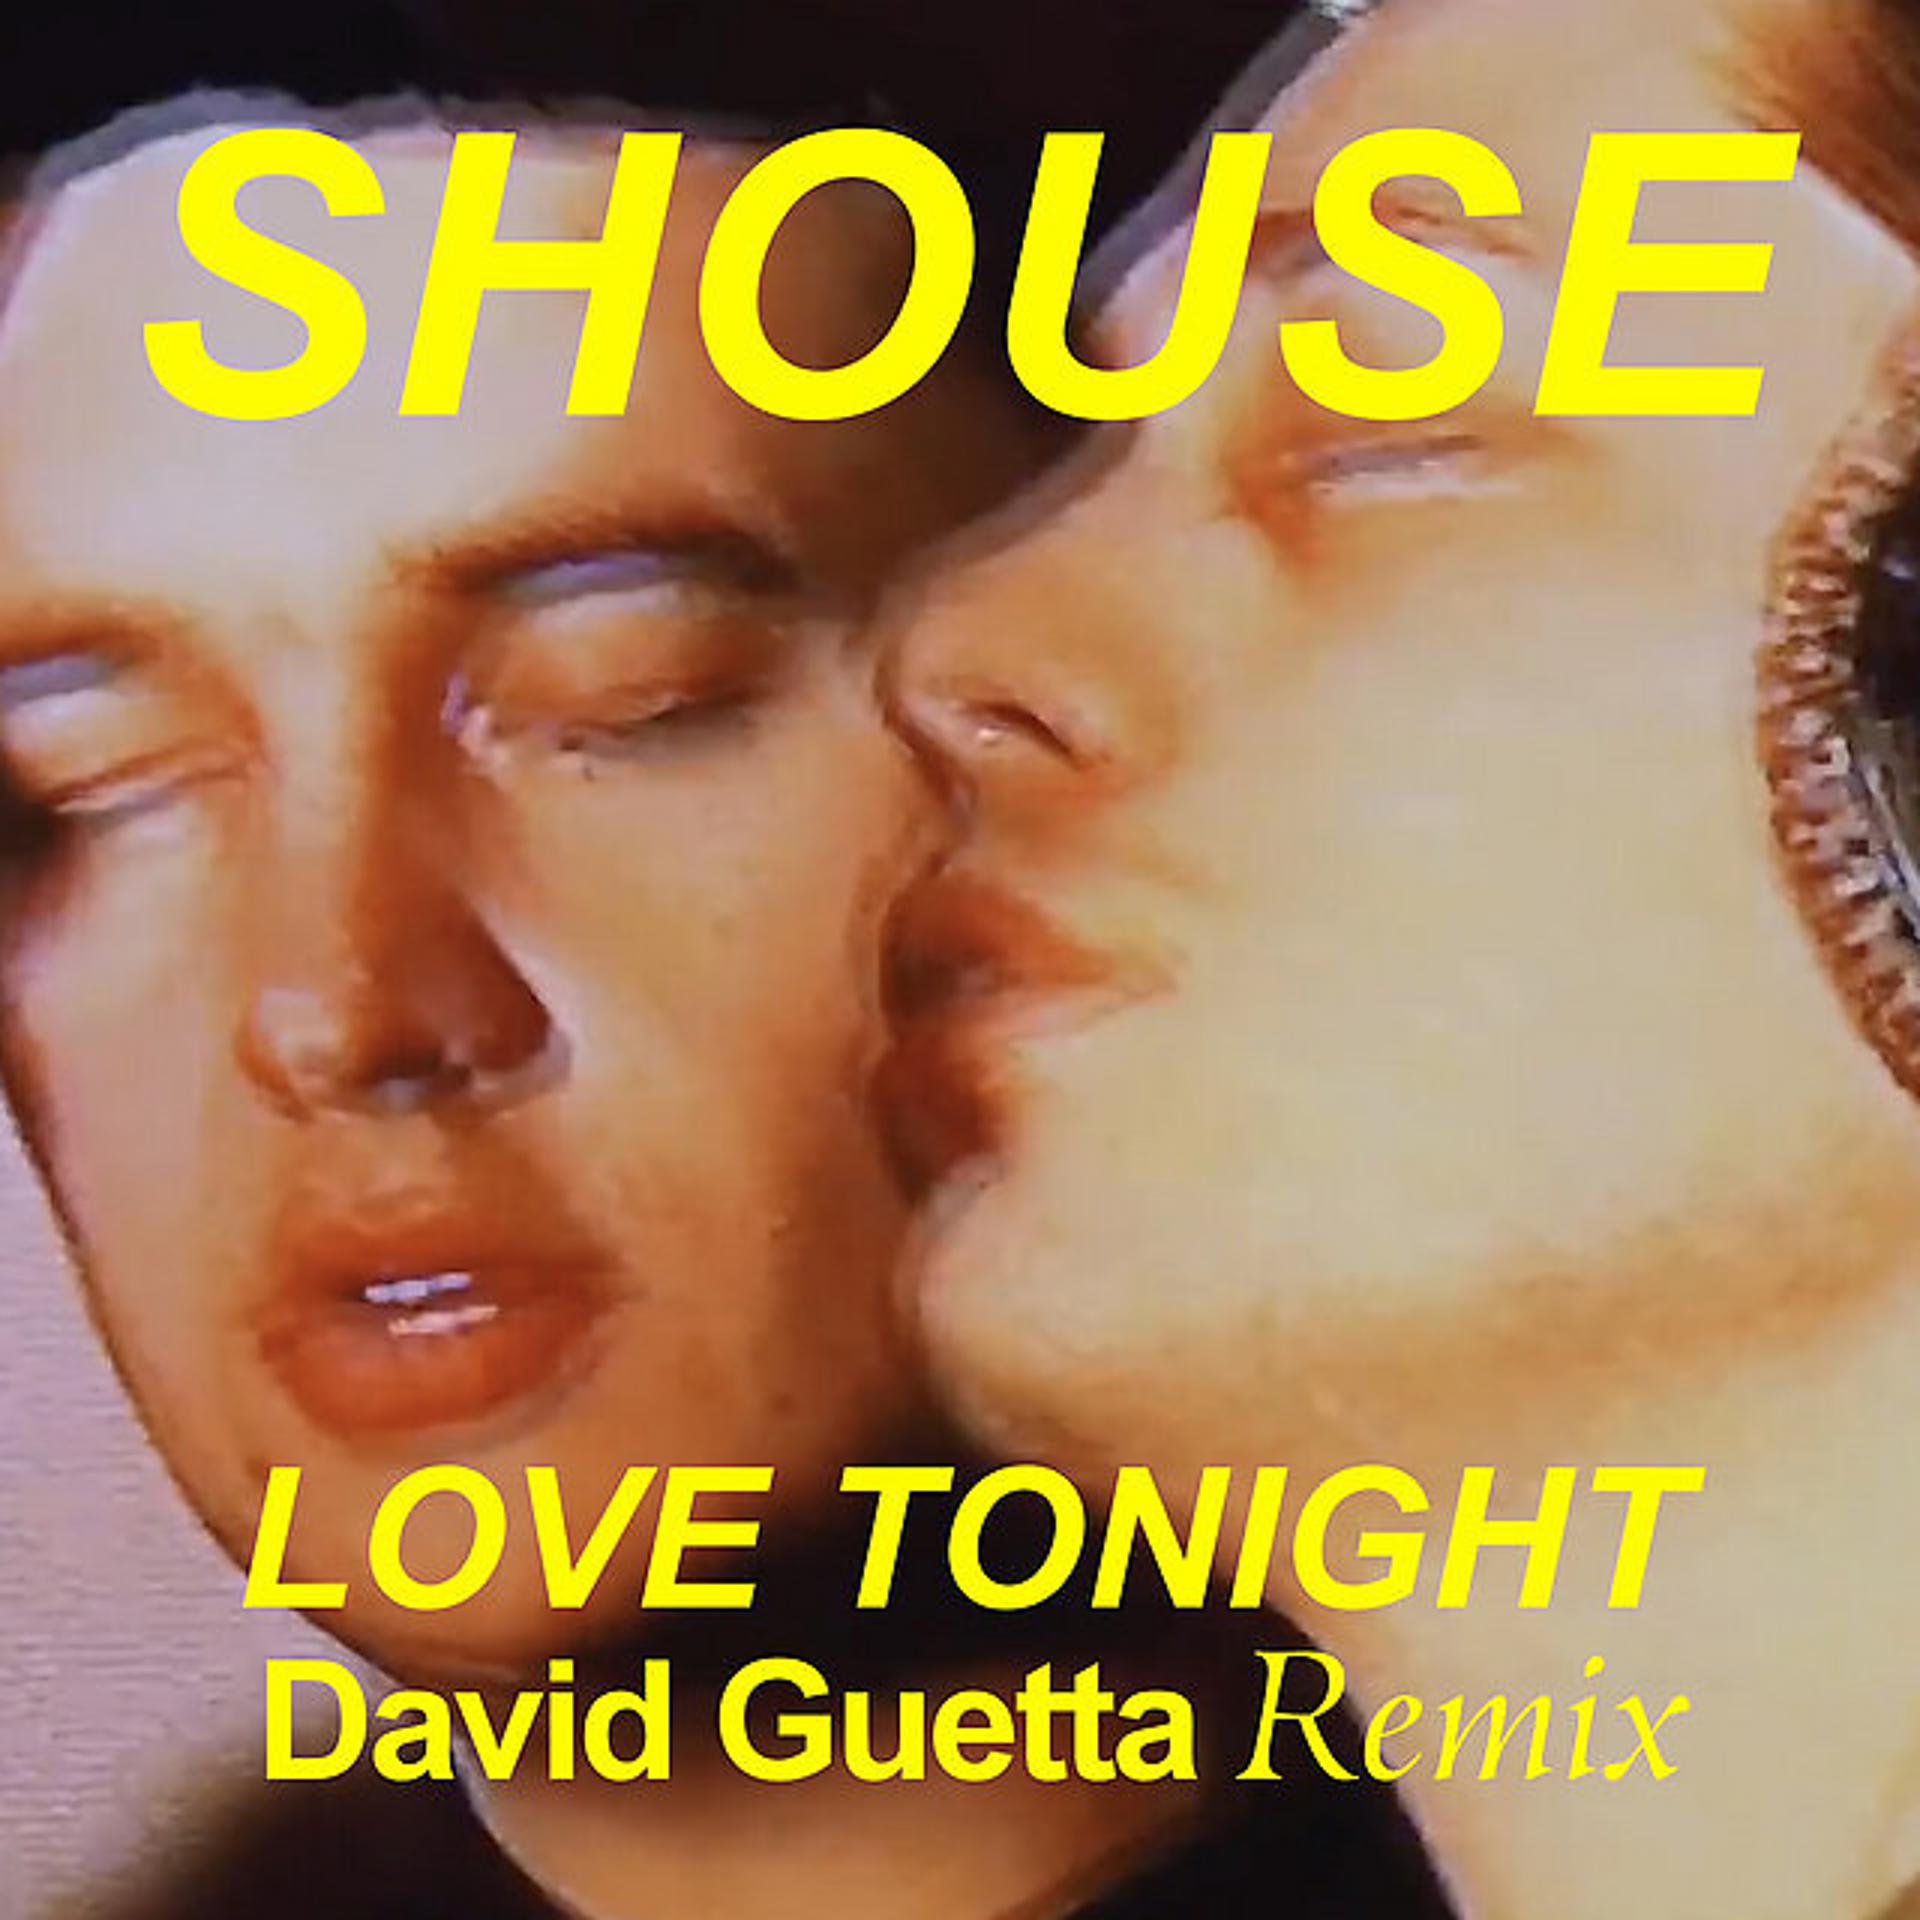 Love toning. Love Tonight. Shouse - Love Tonight (David Guetta Remix Edit). Shouse - Love Tonight (David Guetta. Shouse David Guetta Remix.